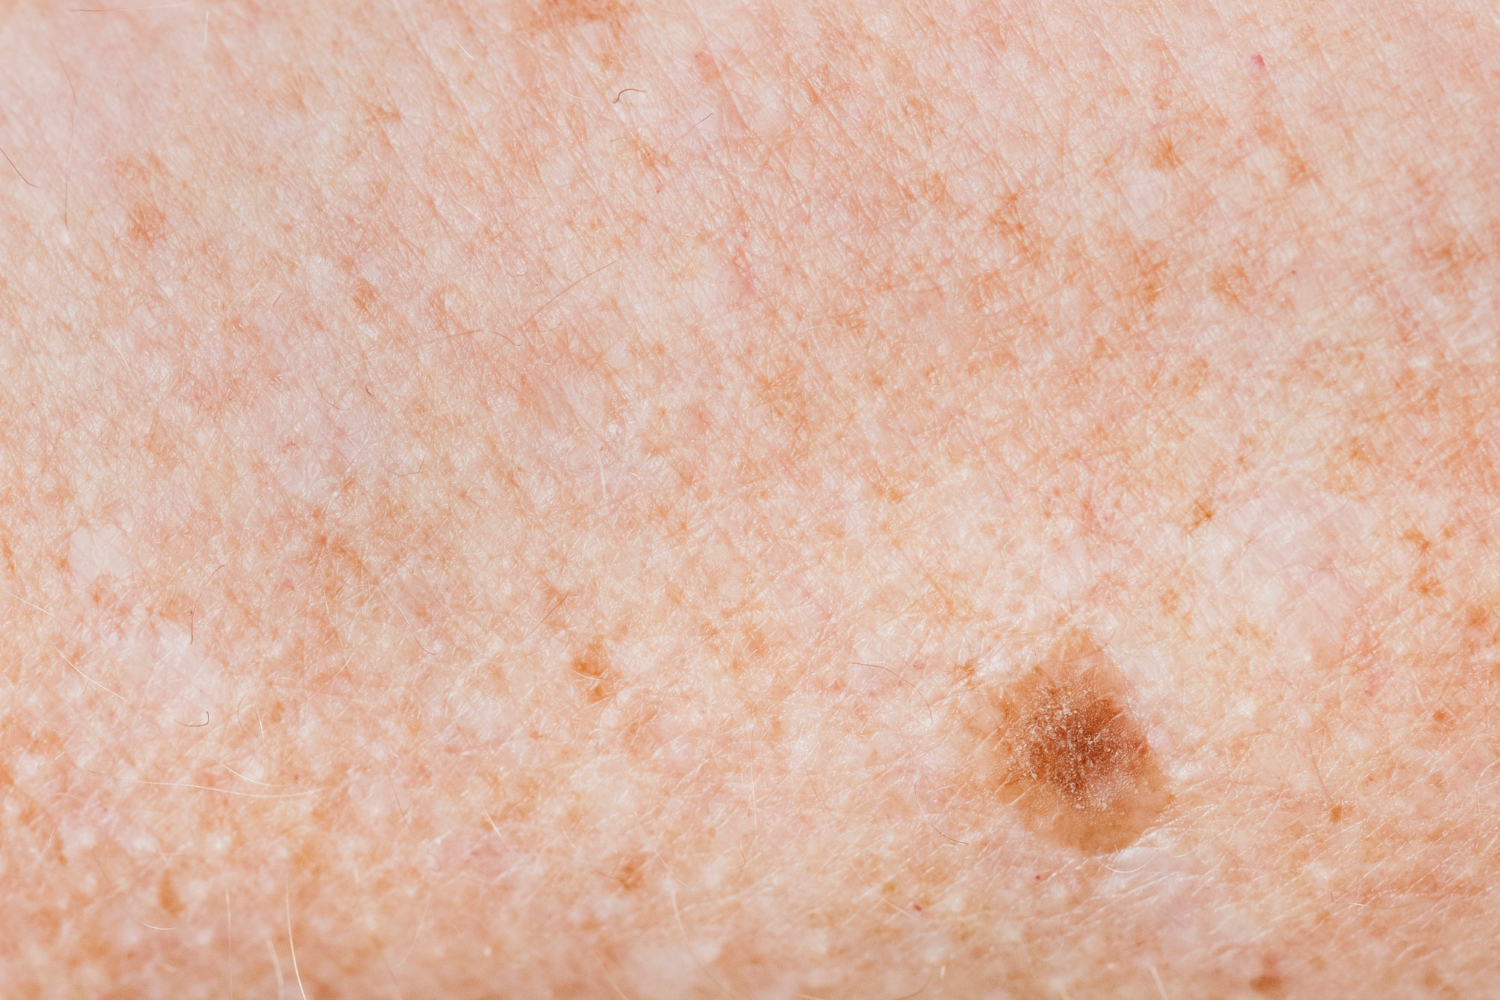 Ensayo clínico demuestra la efectividad de una vacuna contra el cáncer de piel